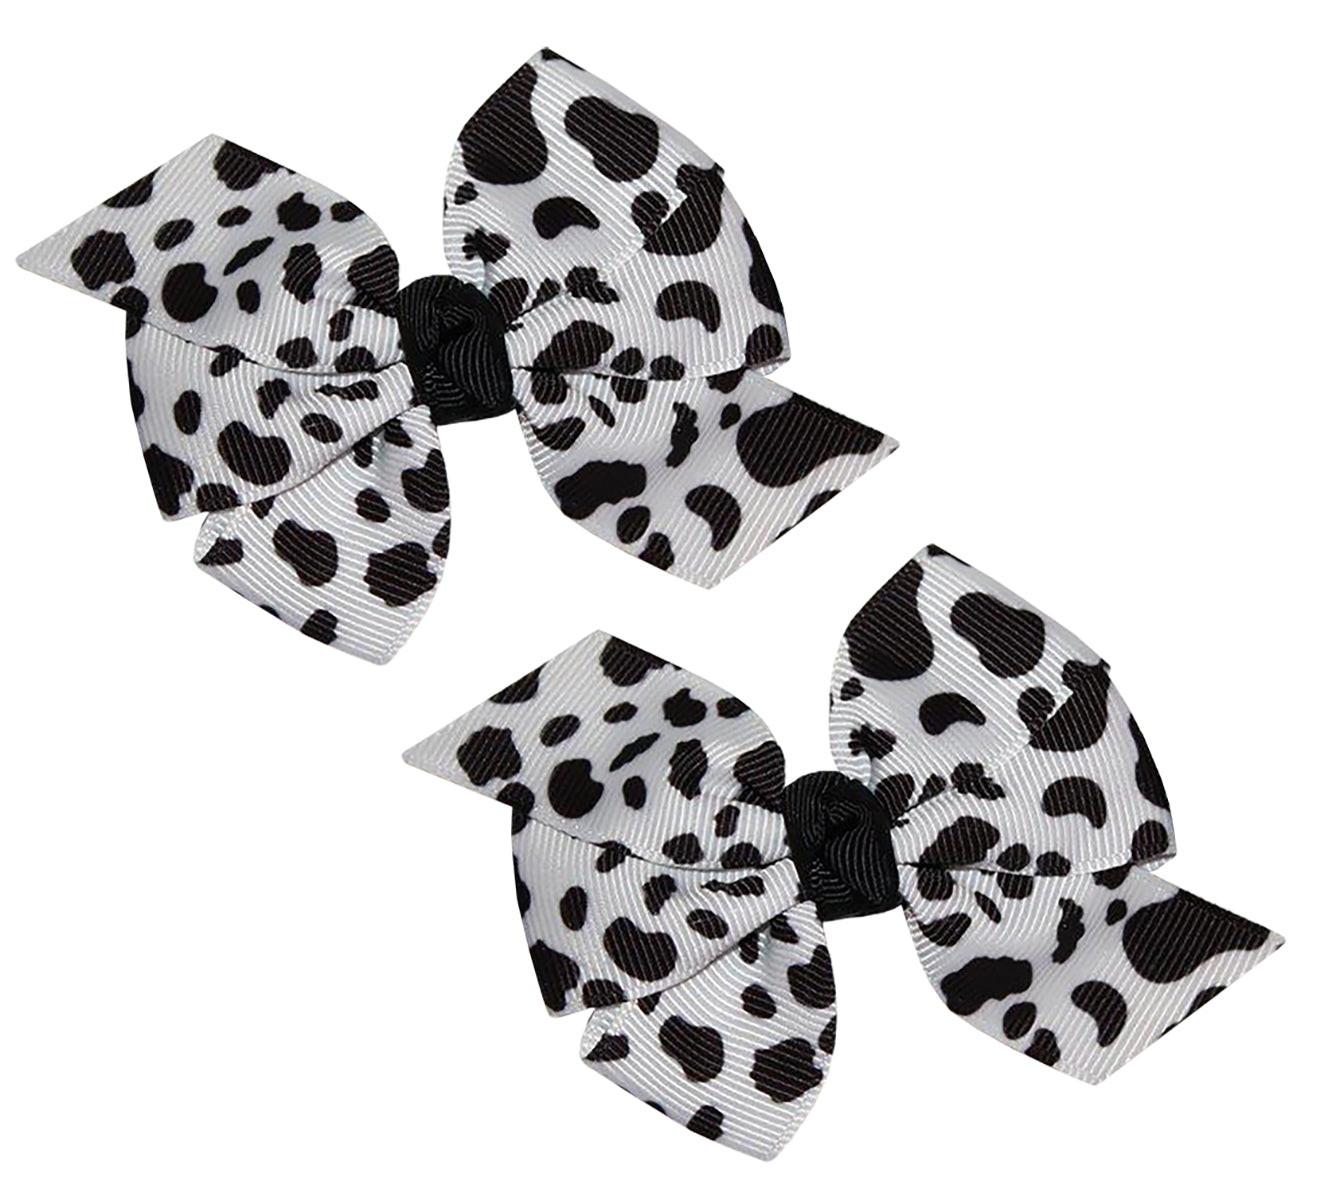 1" Black White Holstein Dairy Cow Print Grosgrain Ribbon DIY Hair Bows Crafts